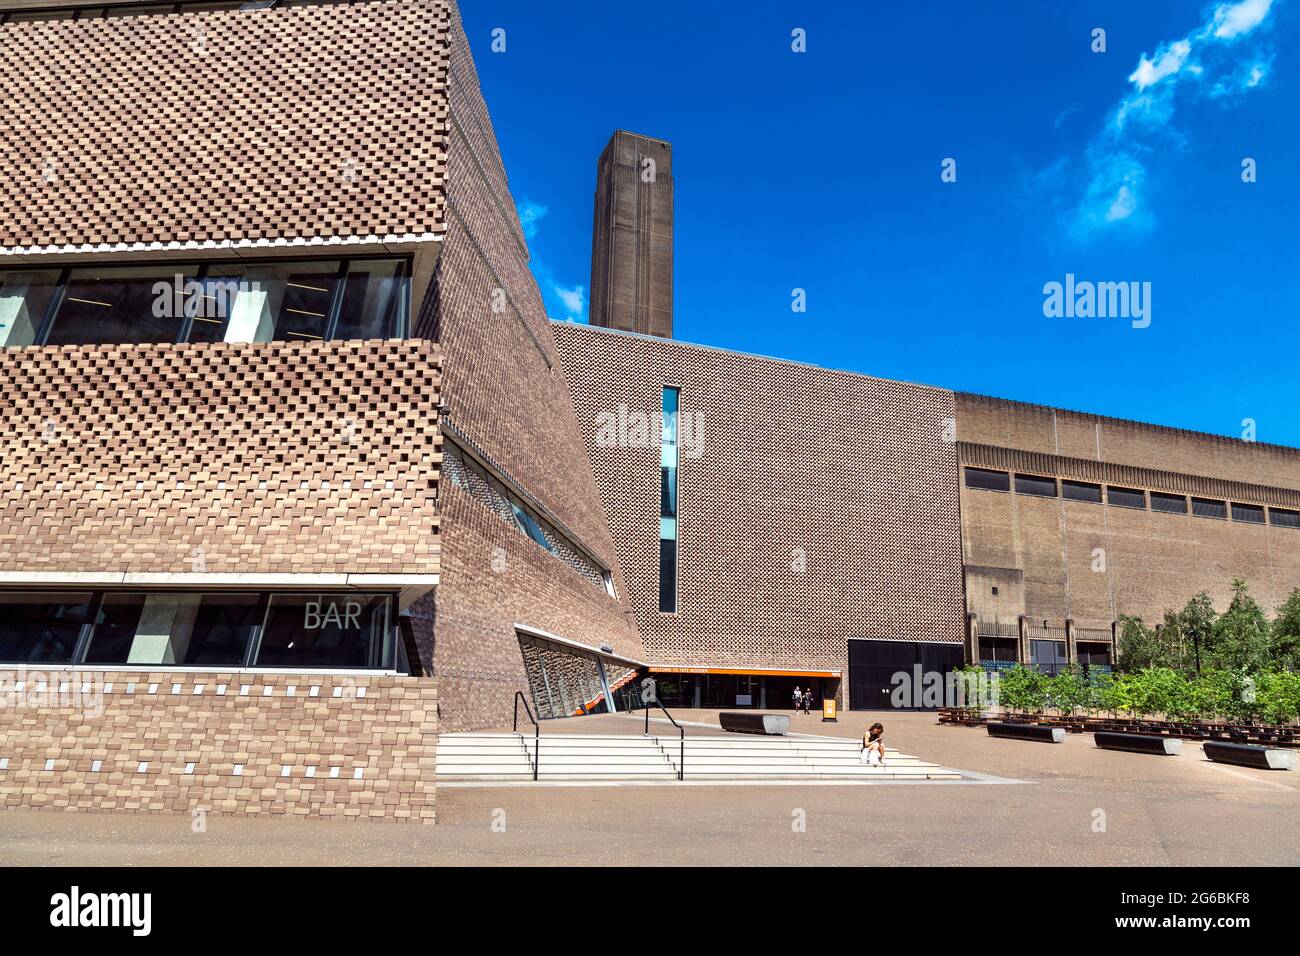 Extérieur du bâtiment Tate Modern Blavatnik, Bankside, Londres, Royaume-Uni Banque D'Images